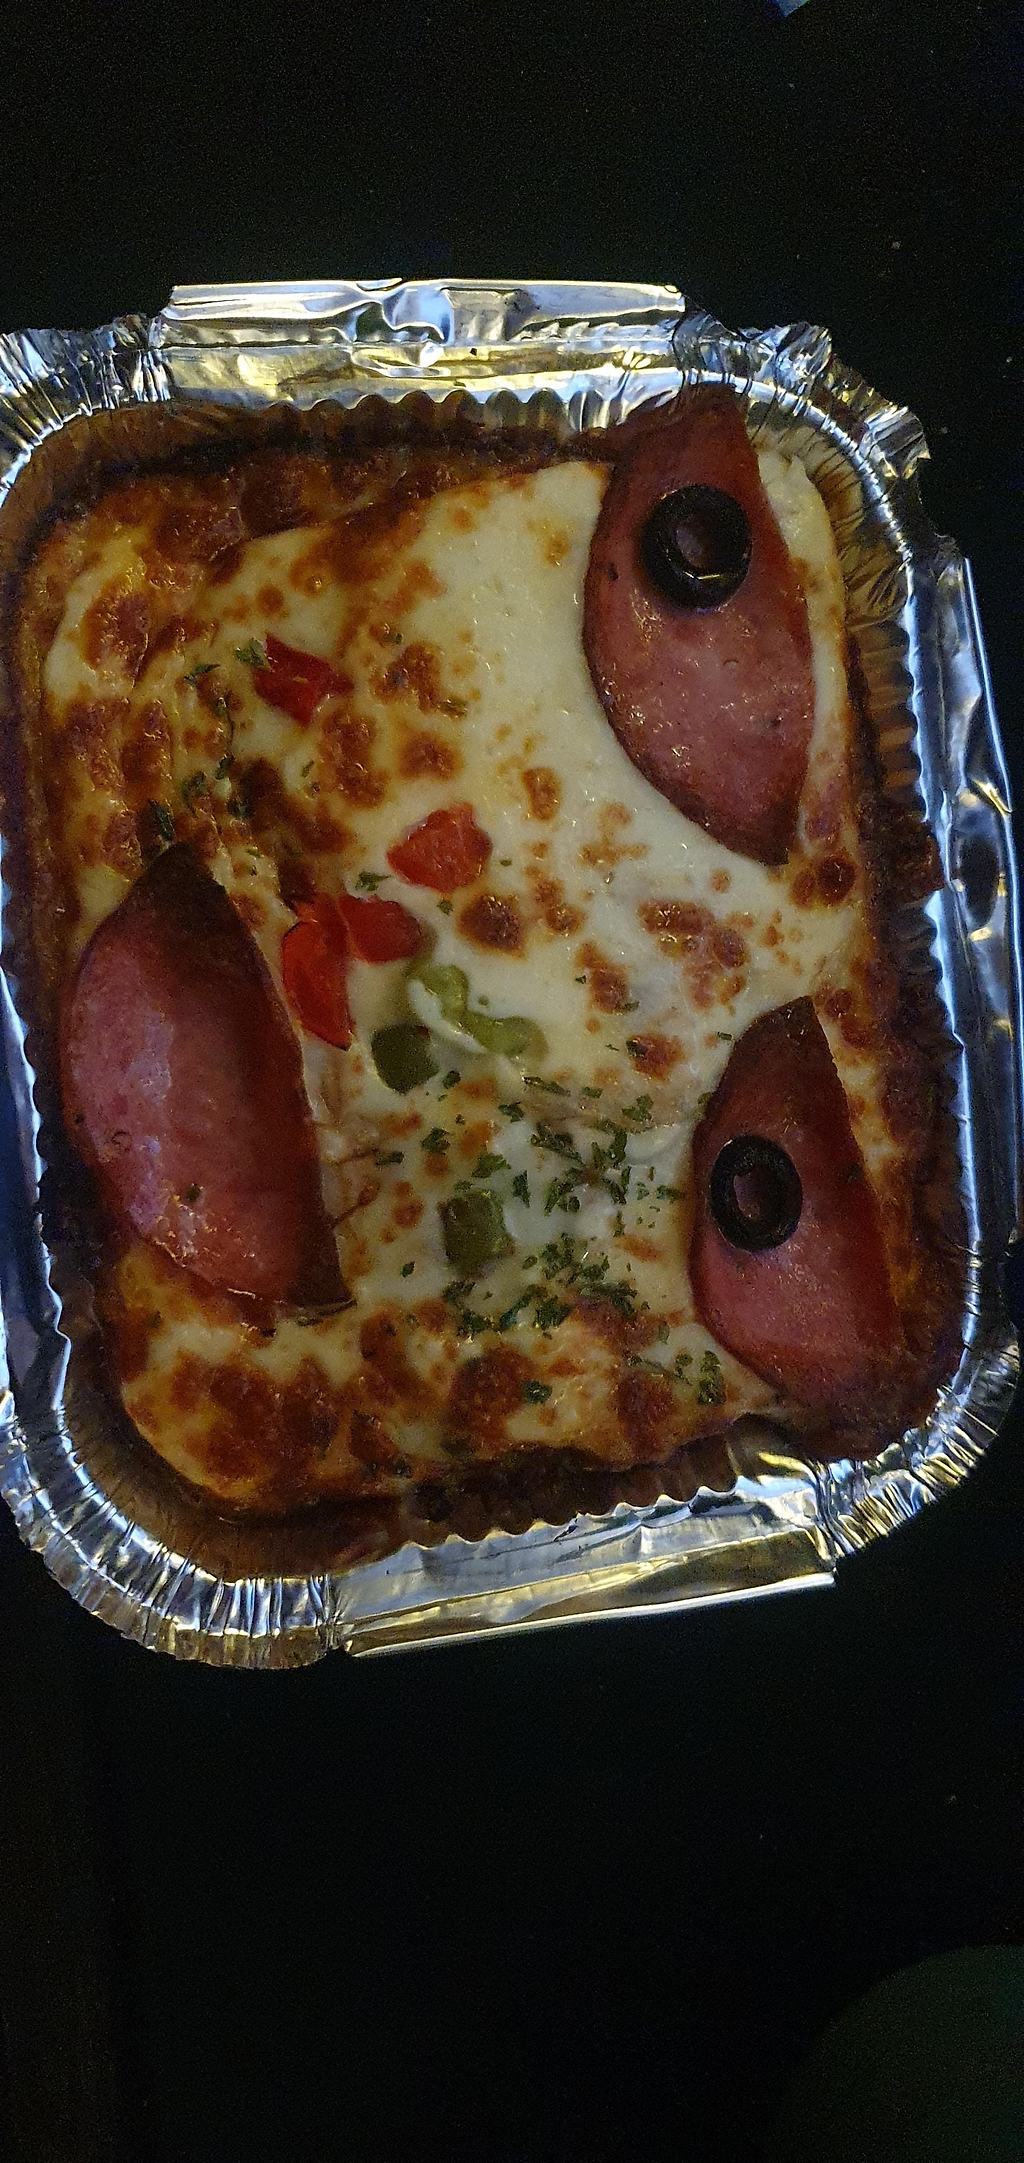 피자랑 같이 온스파게티가 ㅈㄴ무섭게생김